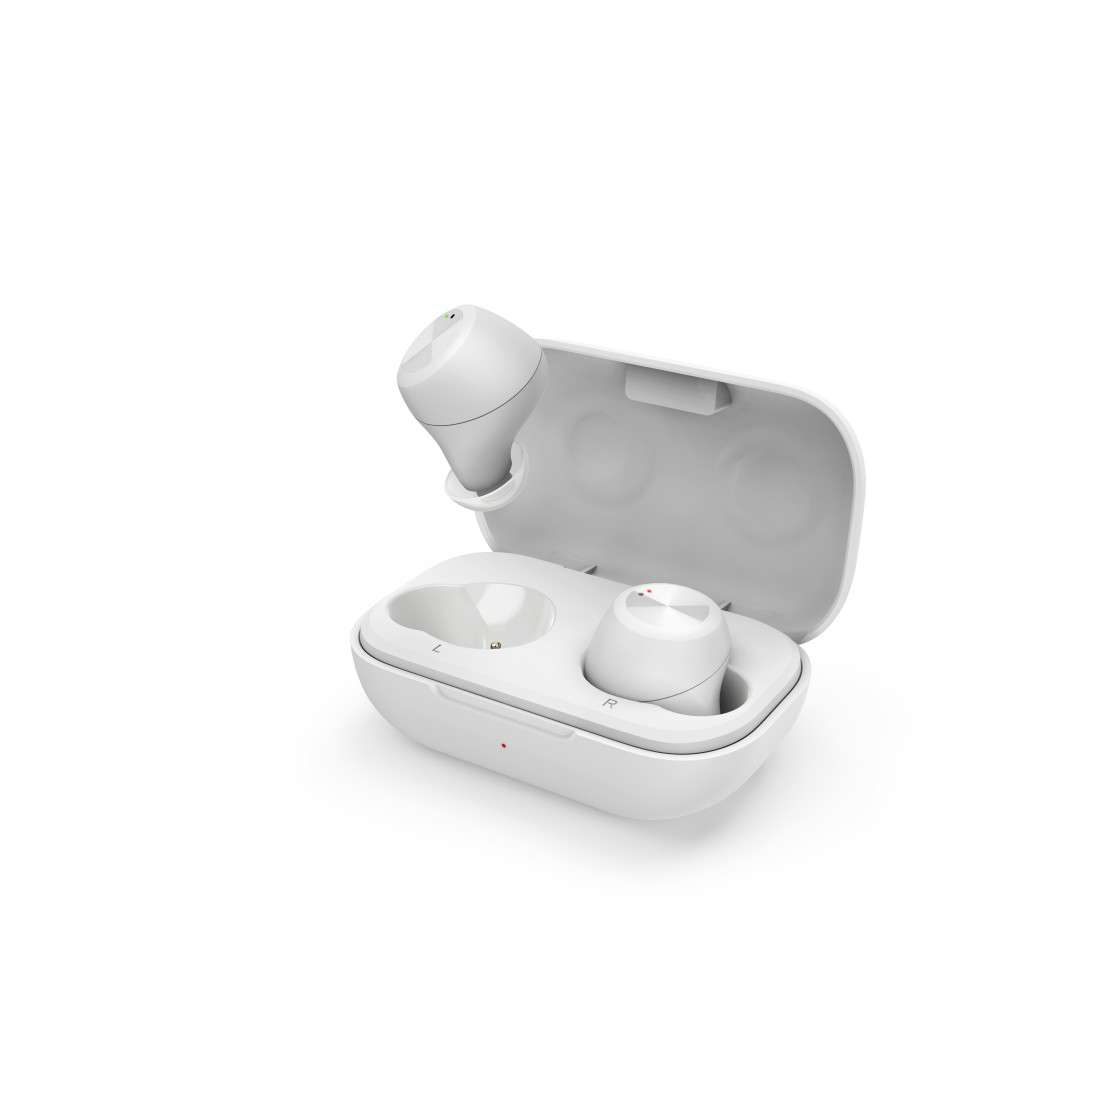 THOMSON (LIZENZMARKE) WEAR7701W Bluetooth®-Kopfhörer, In-Ear, True Wireless, Mikrofon, Weiß